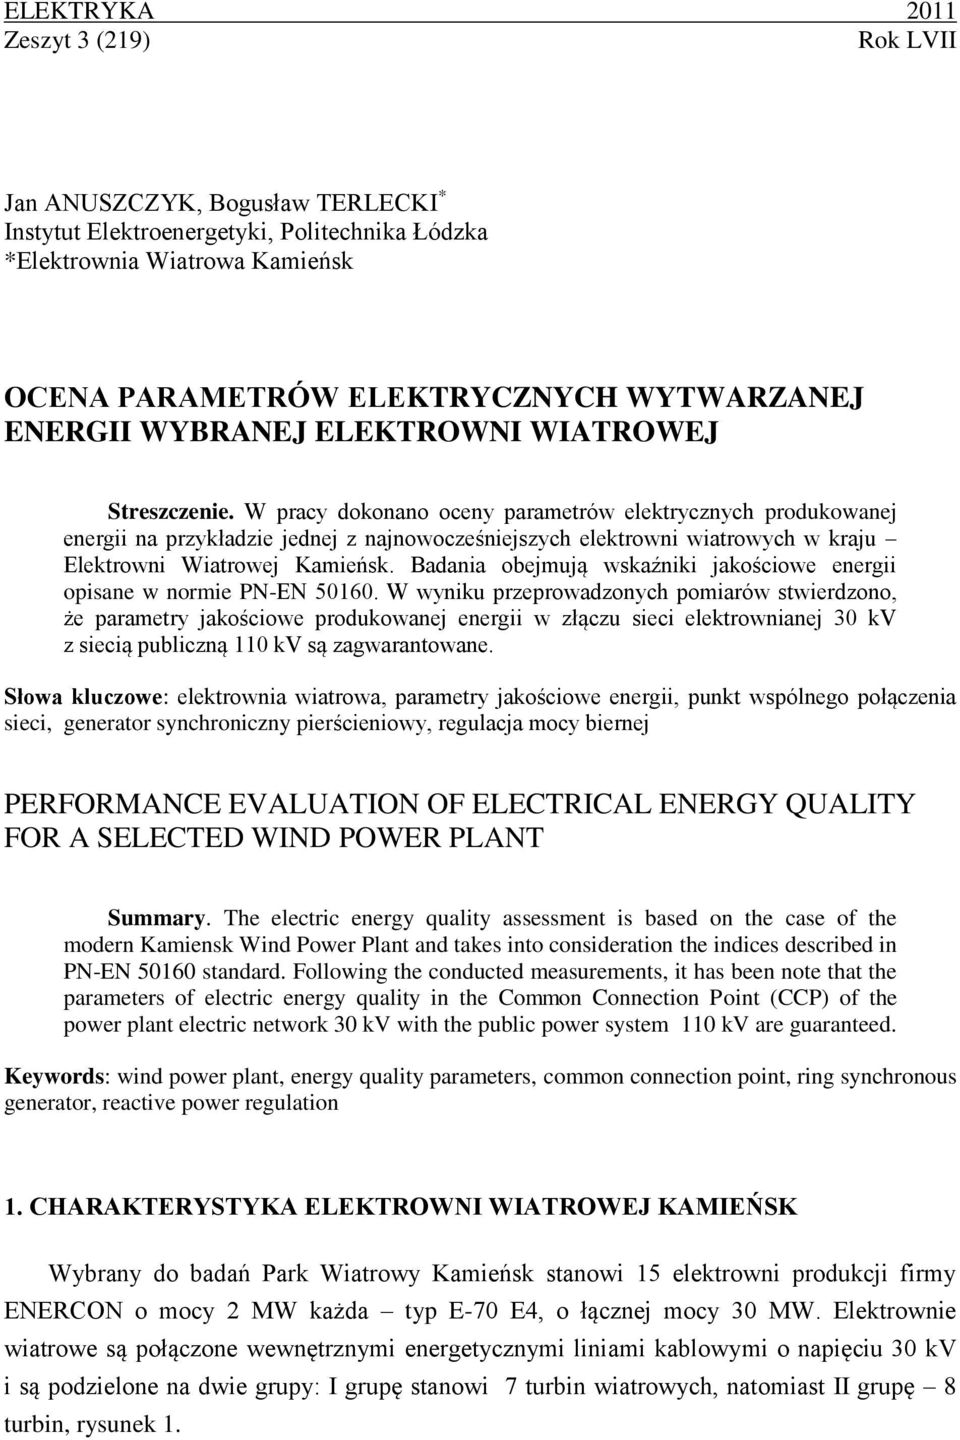 W pracy dokonano oceny parametrów elektrycznych produkowanej energii na przykładzie jednej z najnowocześniejszych elektrowni wiatrowych w kraju Elektrowni Wiatrowej Kamieńsk.